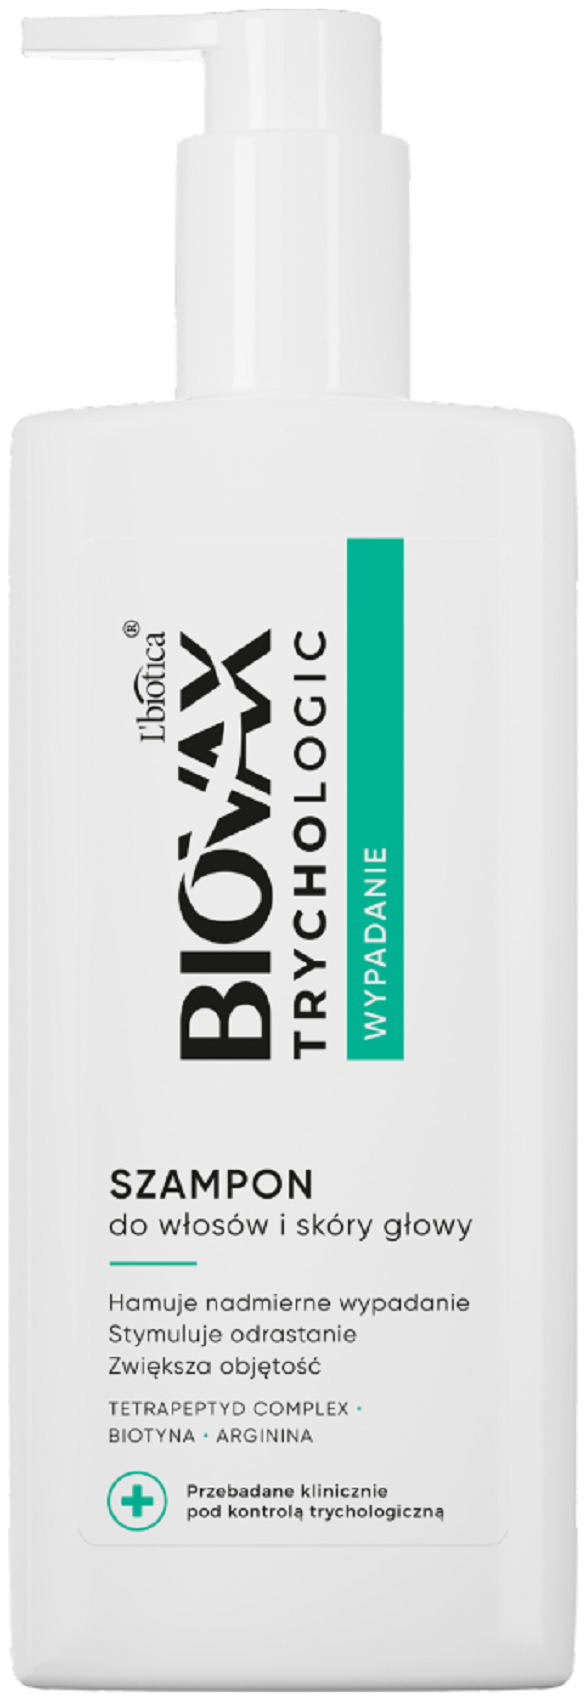 lbiotica biovax szampon do włosów przetłuszczających wizaz